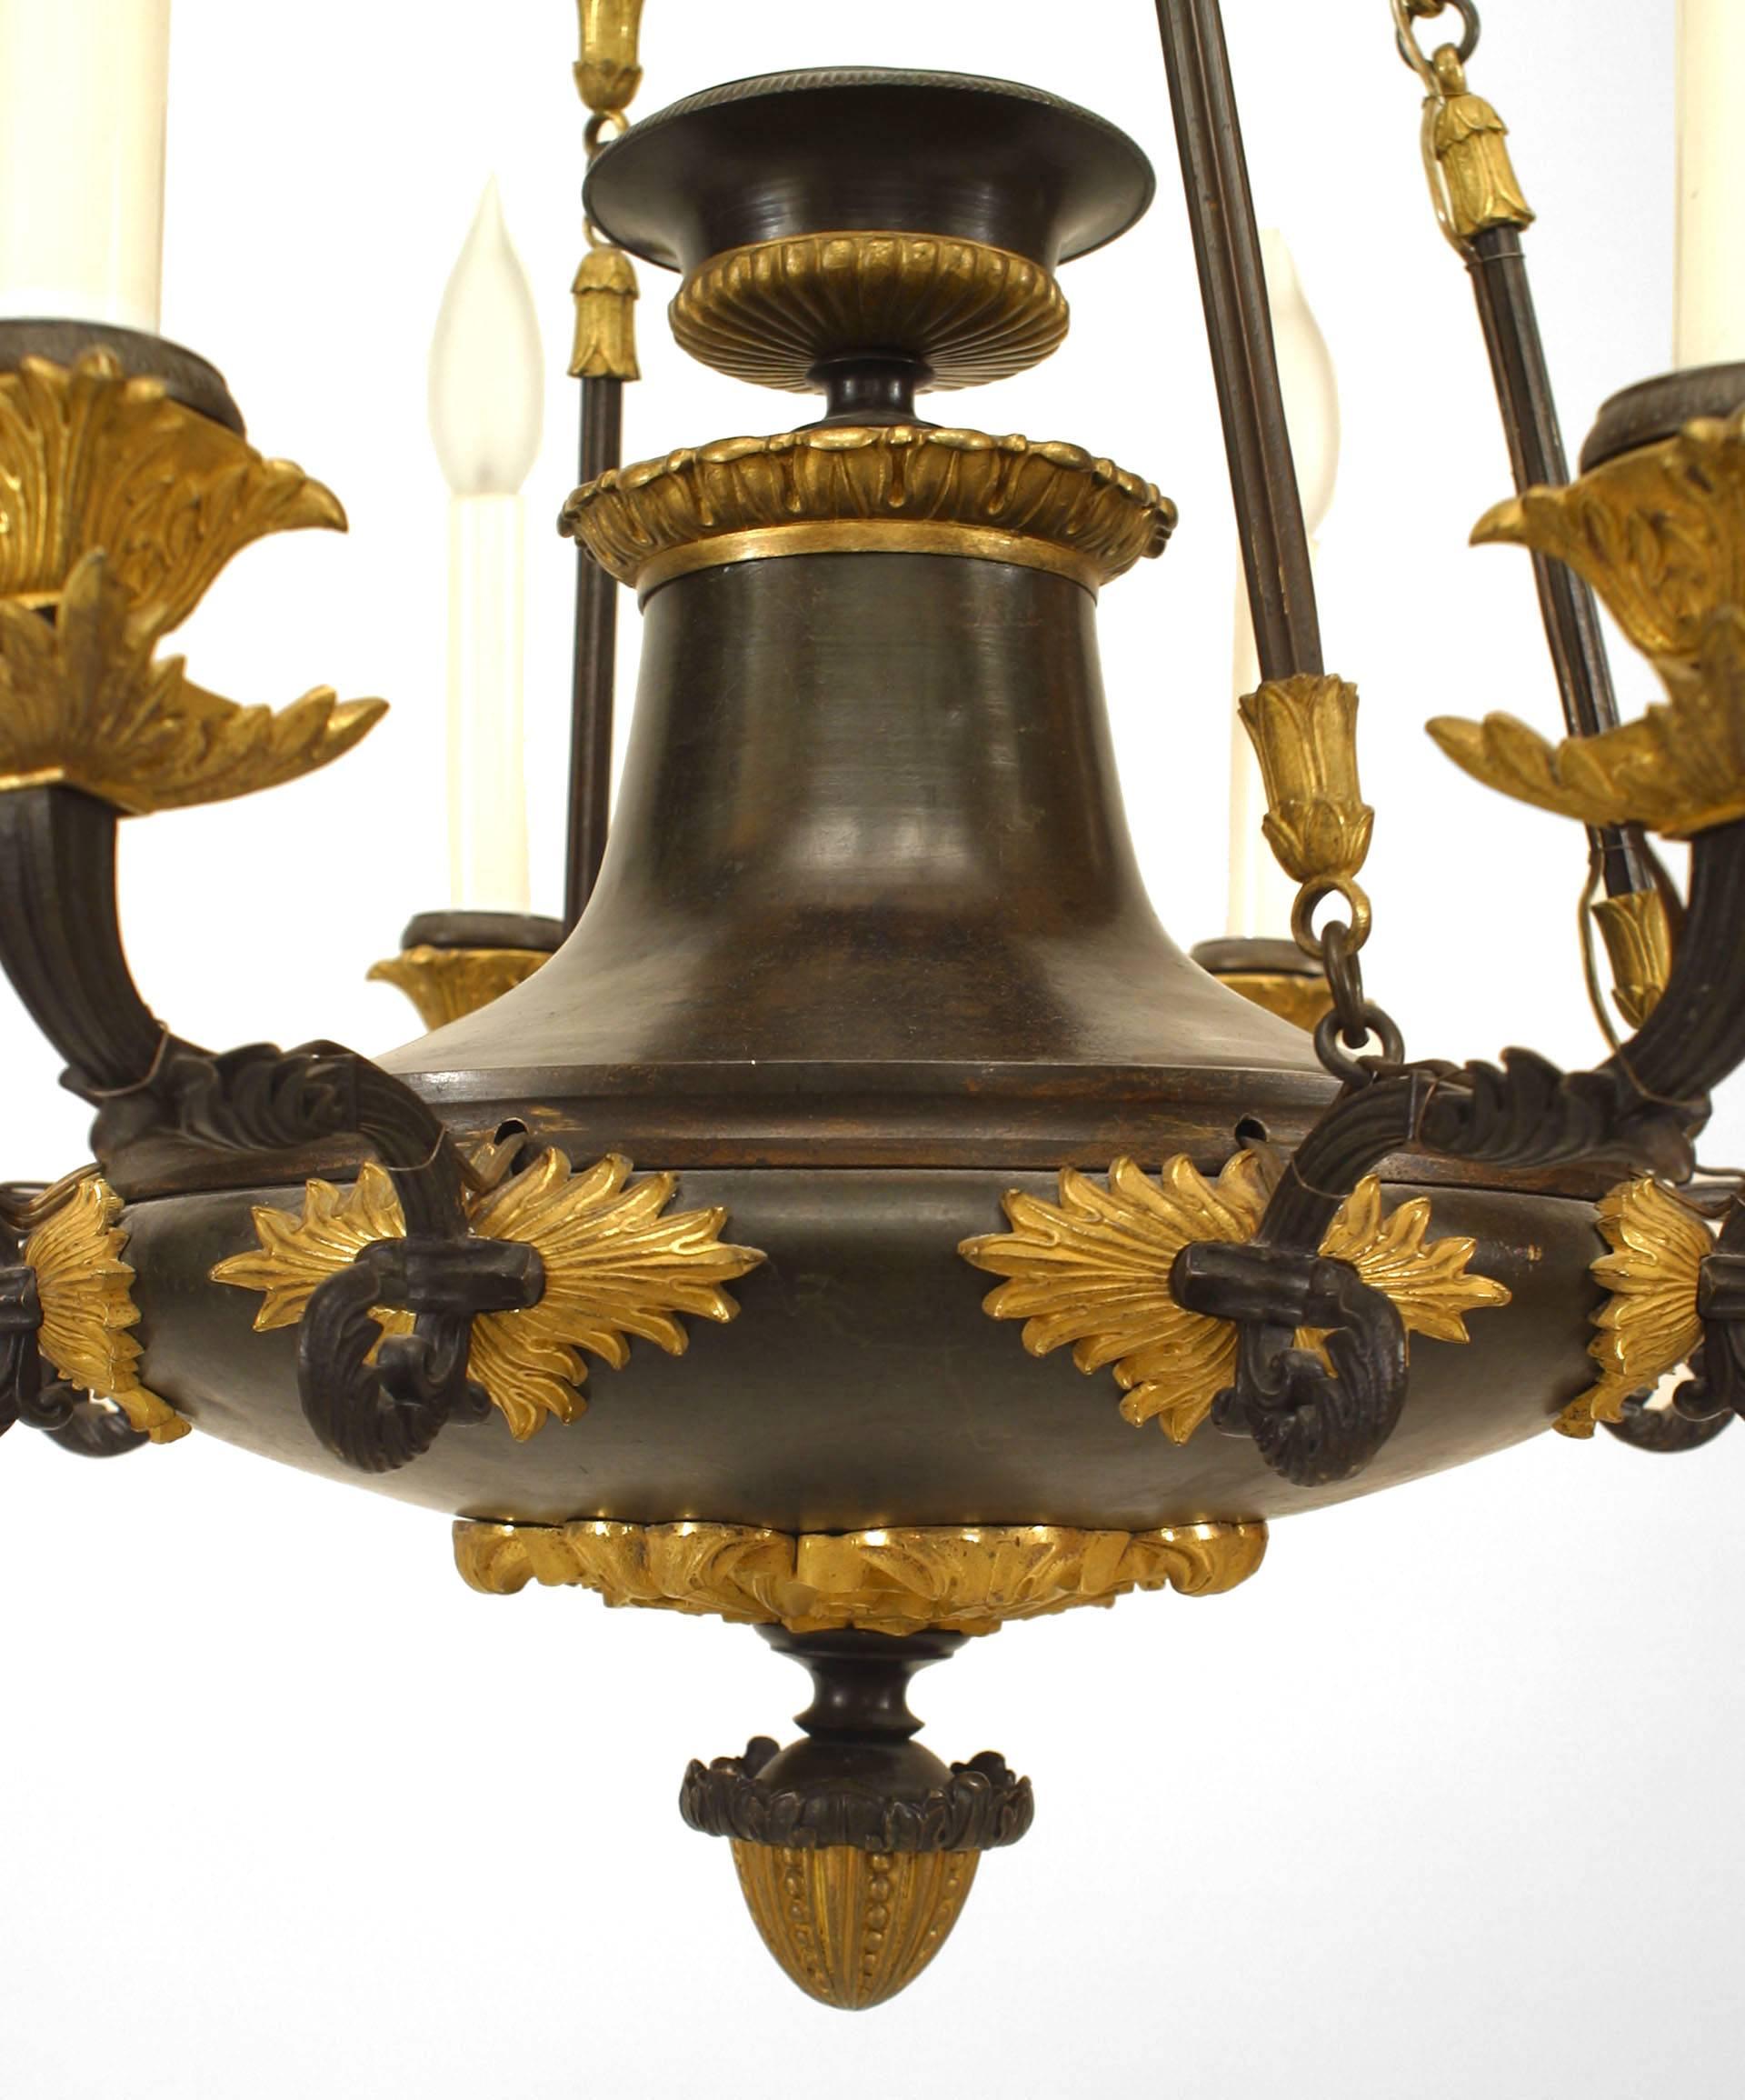 Französischer Empire-Kronleuchter (um 1820) aus Bronze und mit vergoldeten Verzierungen. Die 8 Arme gehen von einem runden Kranz mit Eicheltropfen aus und werden von 4 Ketten mit Blättern getragen.
